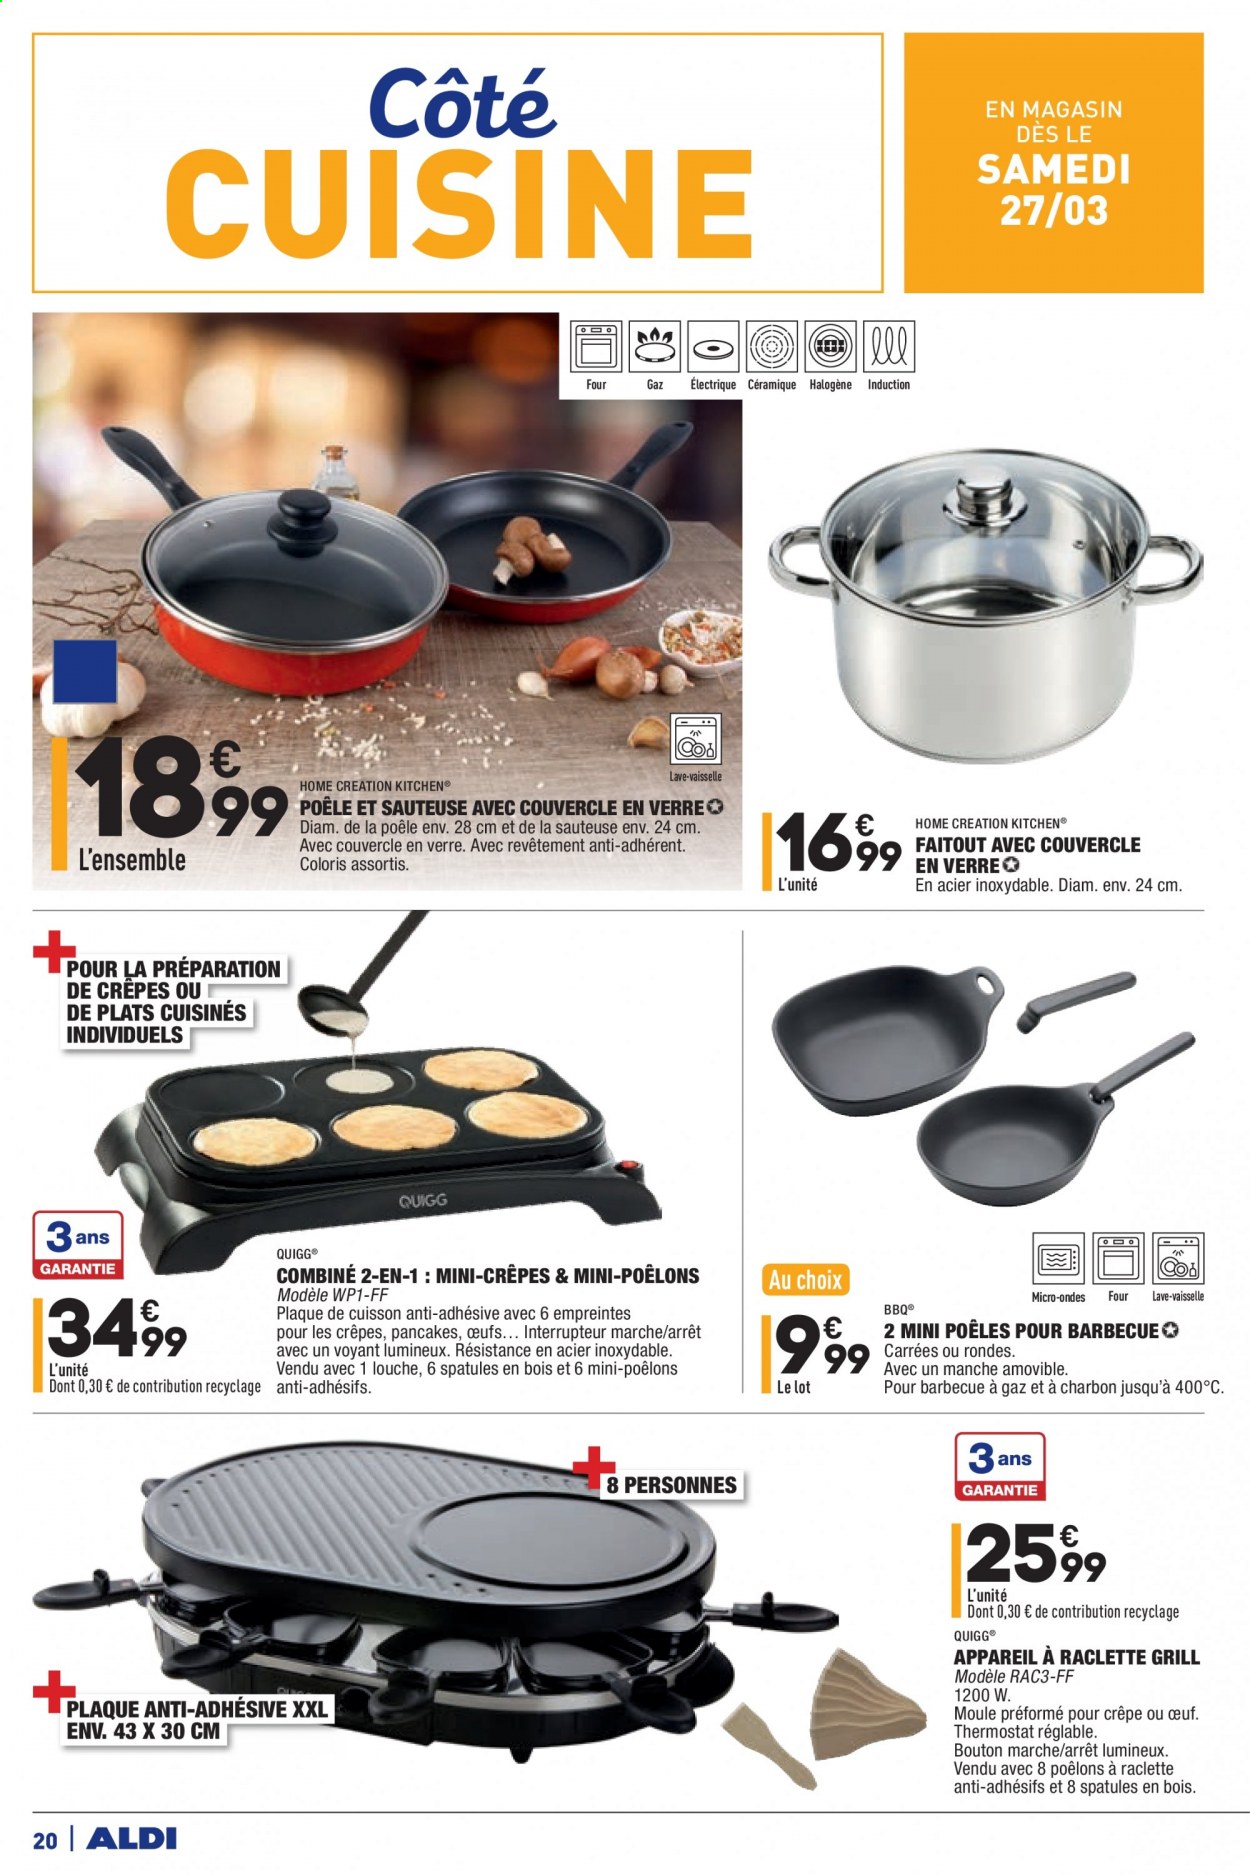 thumbnail - Catalogue ALDI - 23/03/2021 - 29/03/2021 - Produits soldés - plat cuisiné, œufs, poêle, louche, sauteuse, appareil à raclette, interrupteur. Page 20.